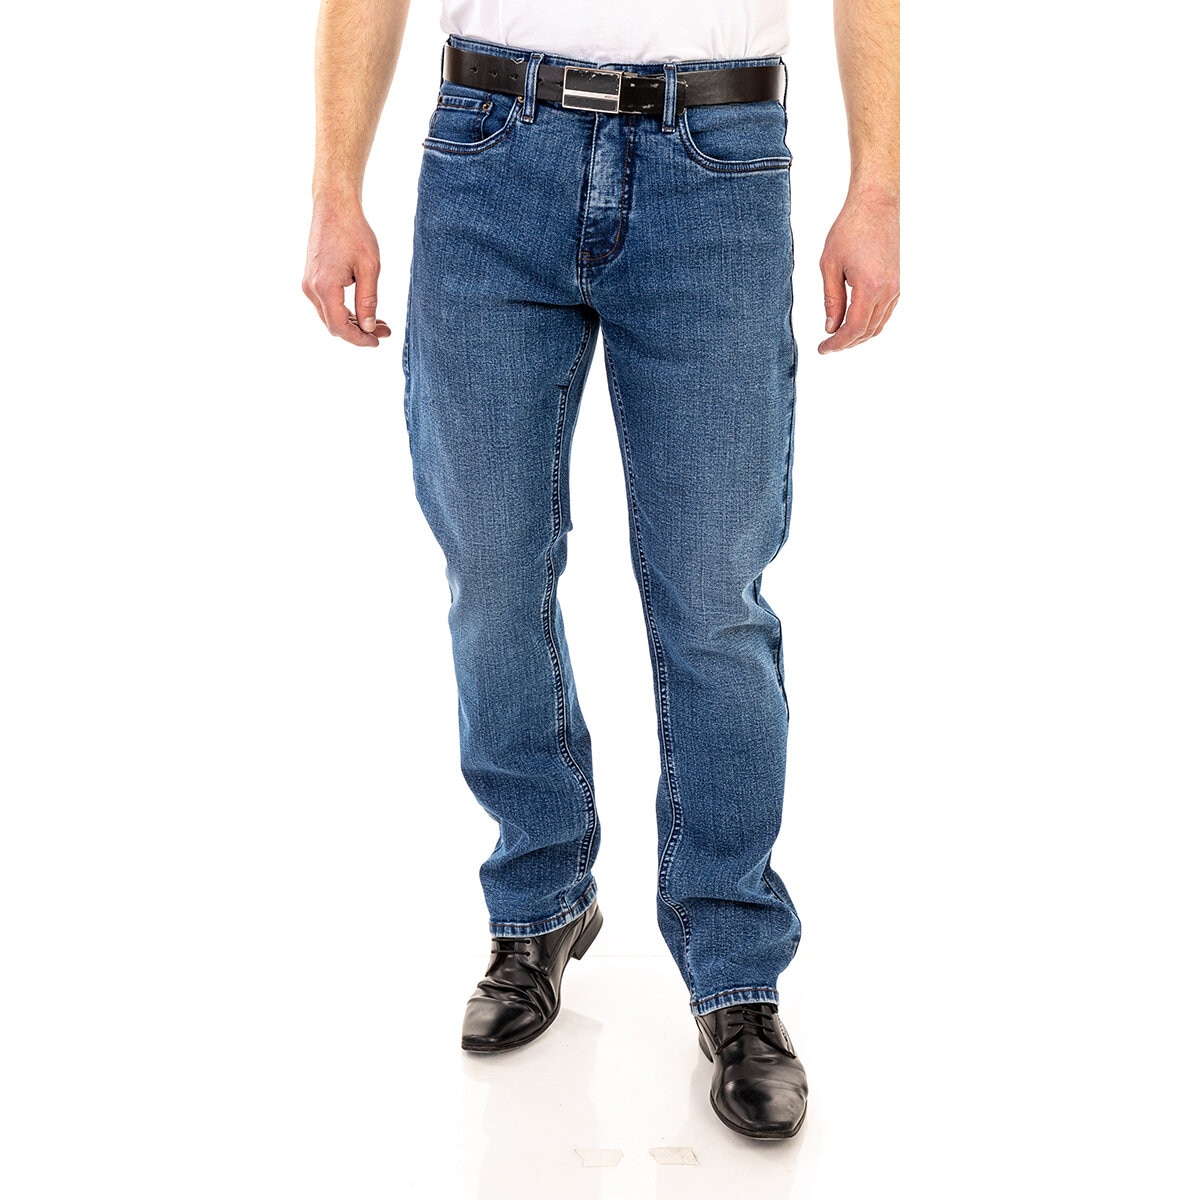 Urban Star Jeans para Caballero Varias Tallas y Colores ...